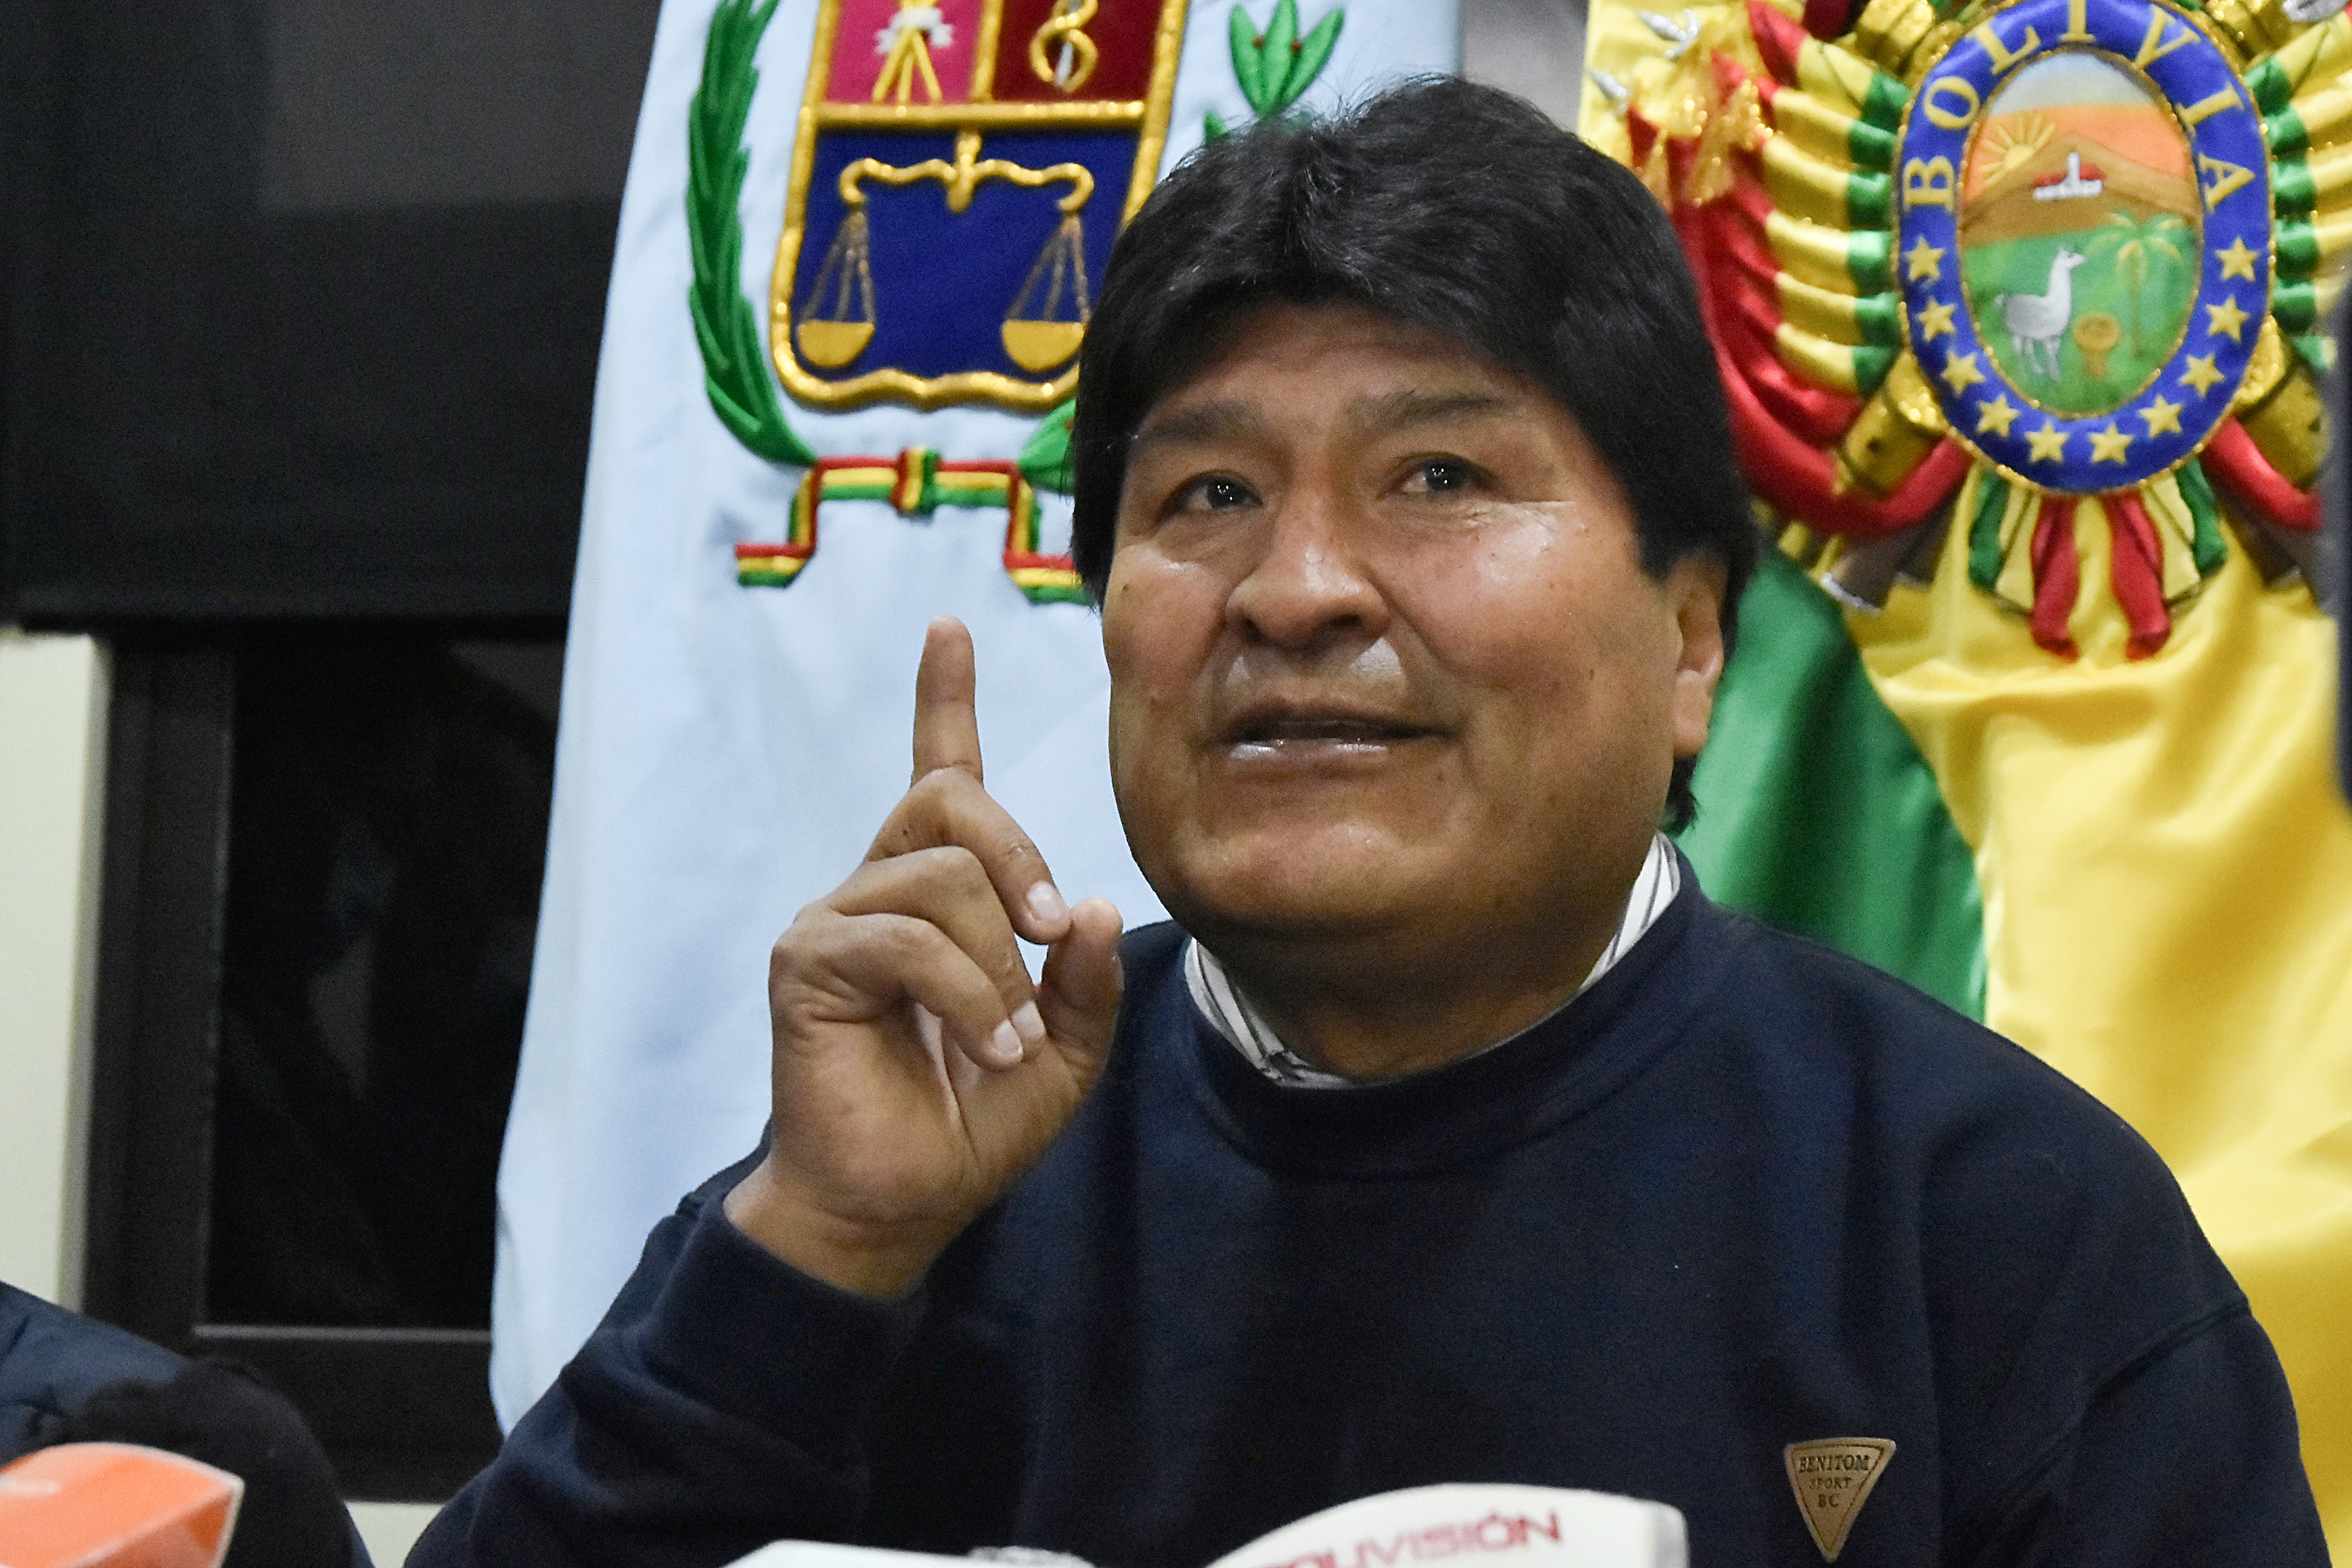 El diputado Rolando Cuéllar tildó a Evo Morales de "dictador" (REUTERS/Patricia Pinto)